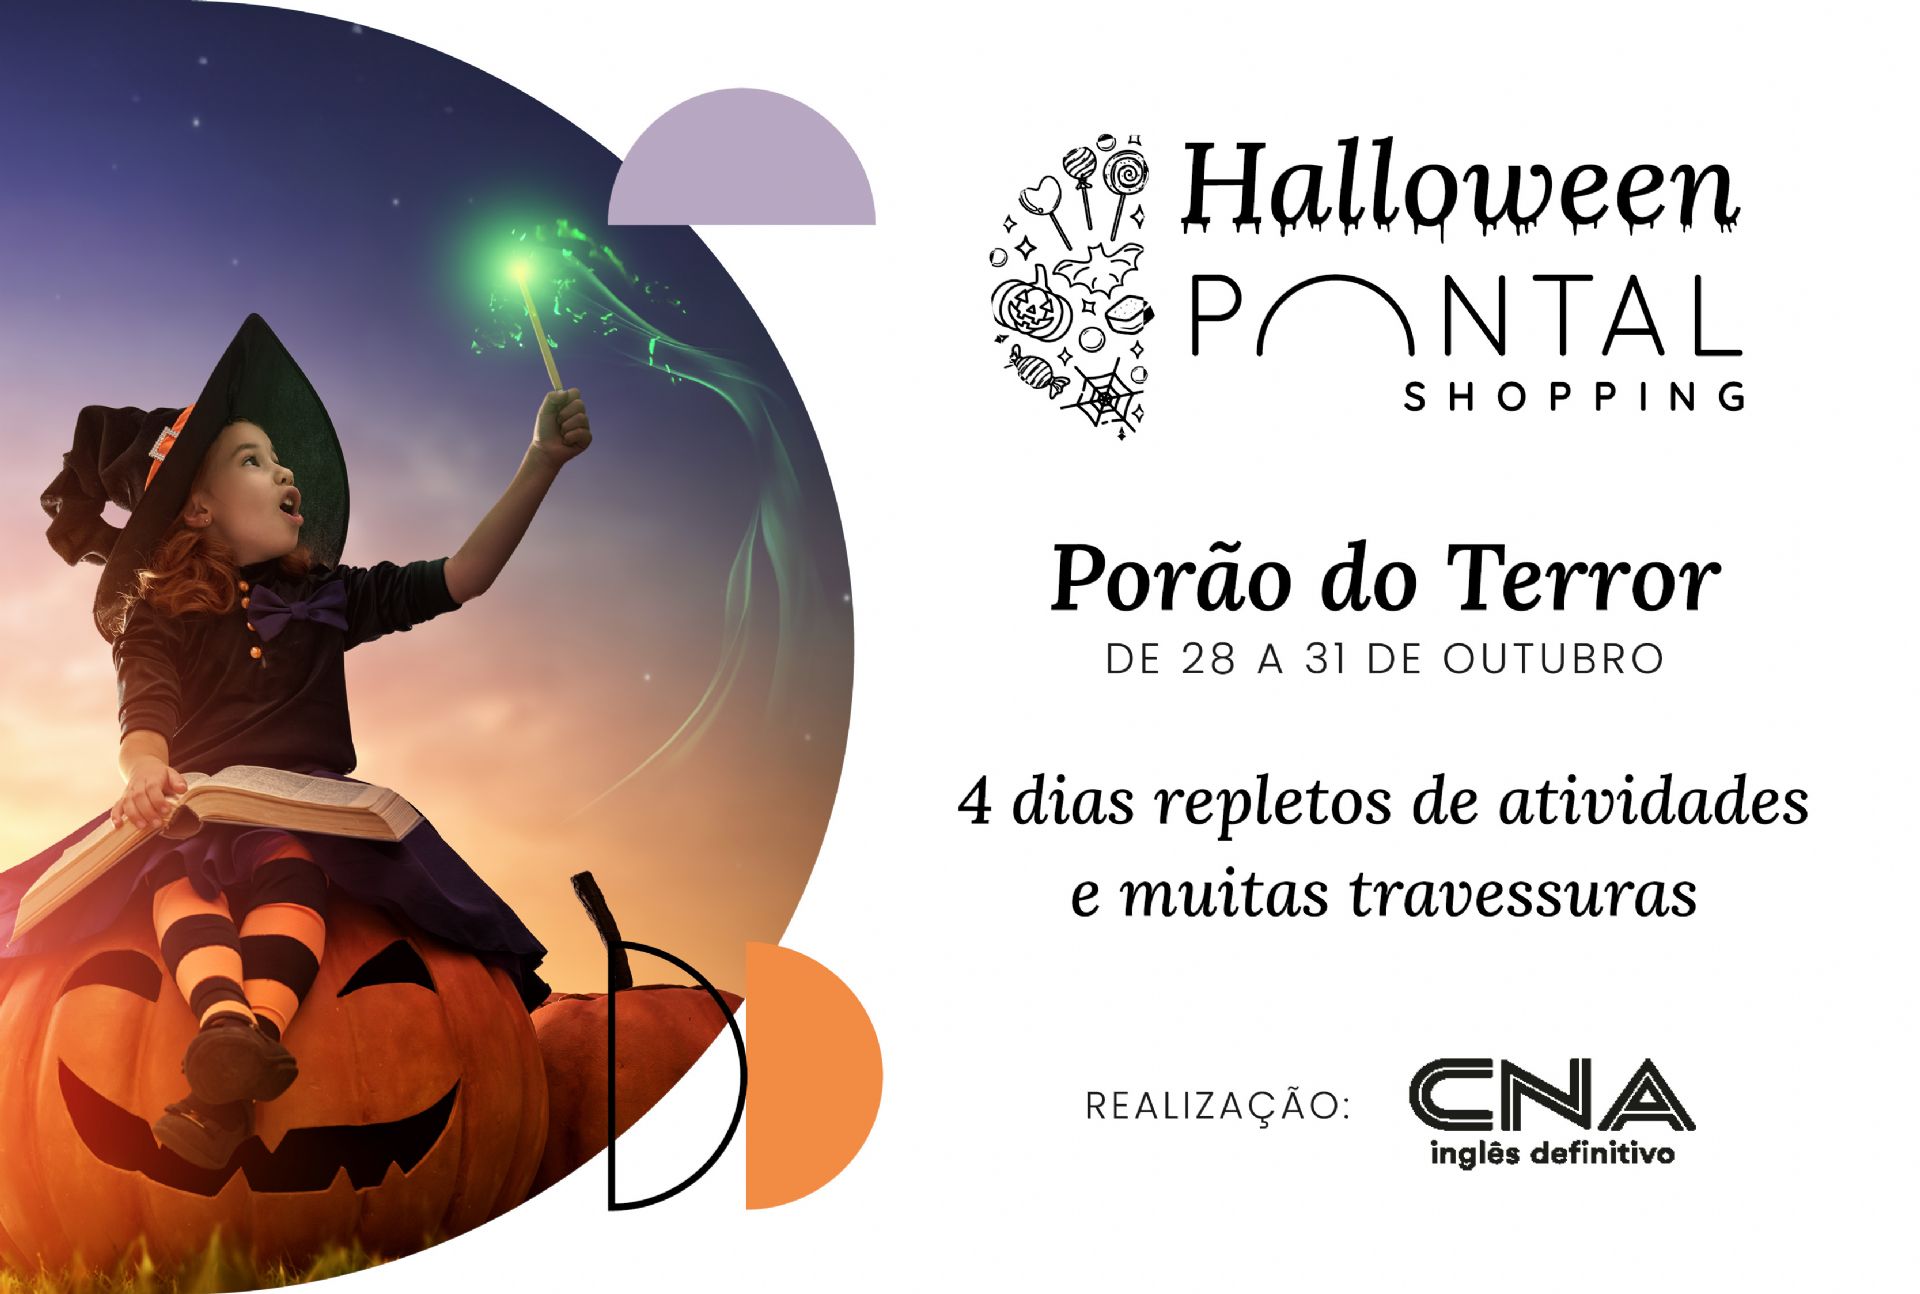 Confira festas para curtir o Halloween em Porto Alegre no final de semana